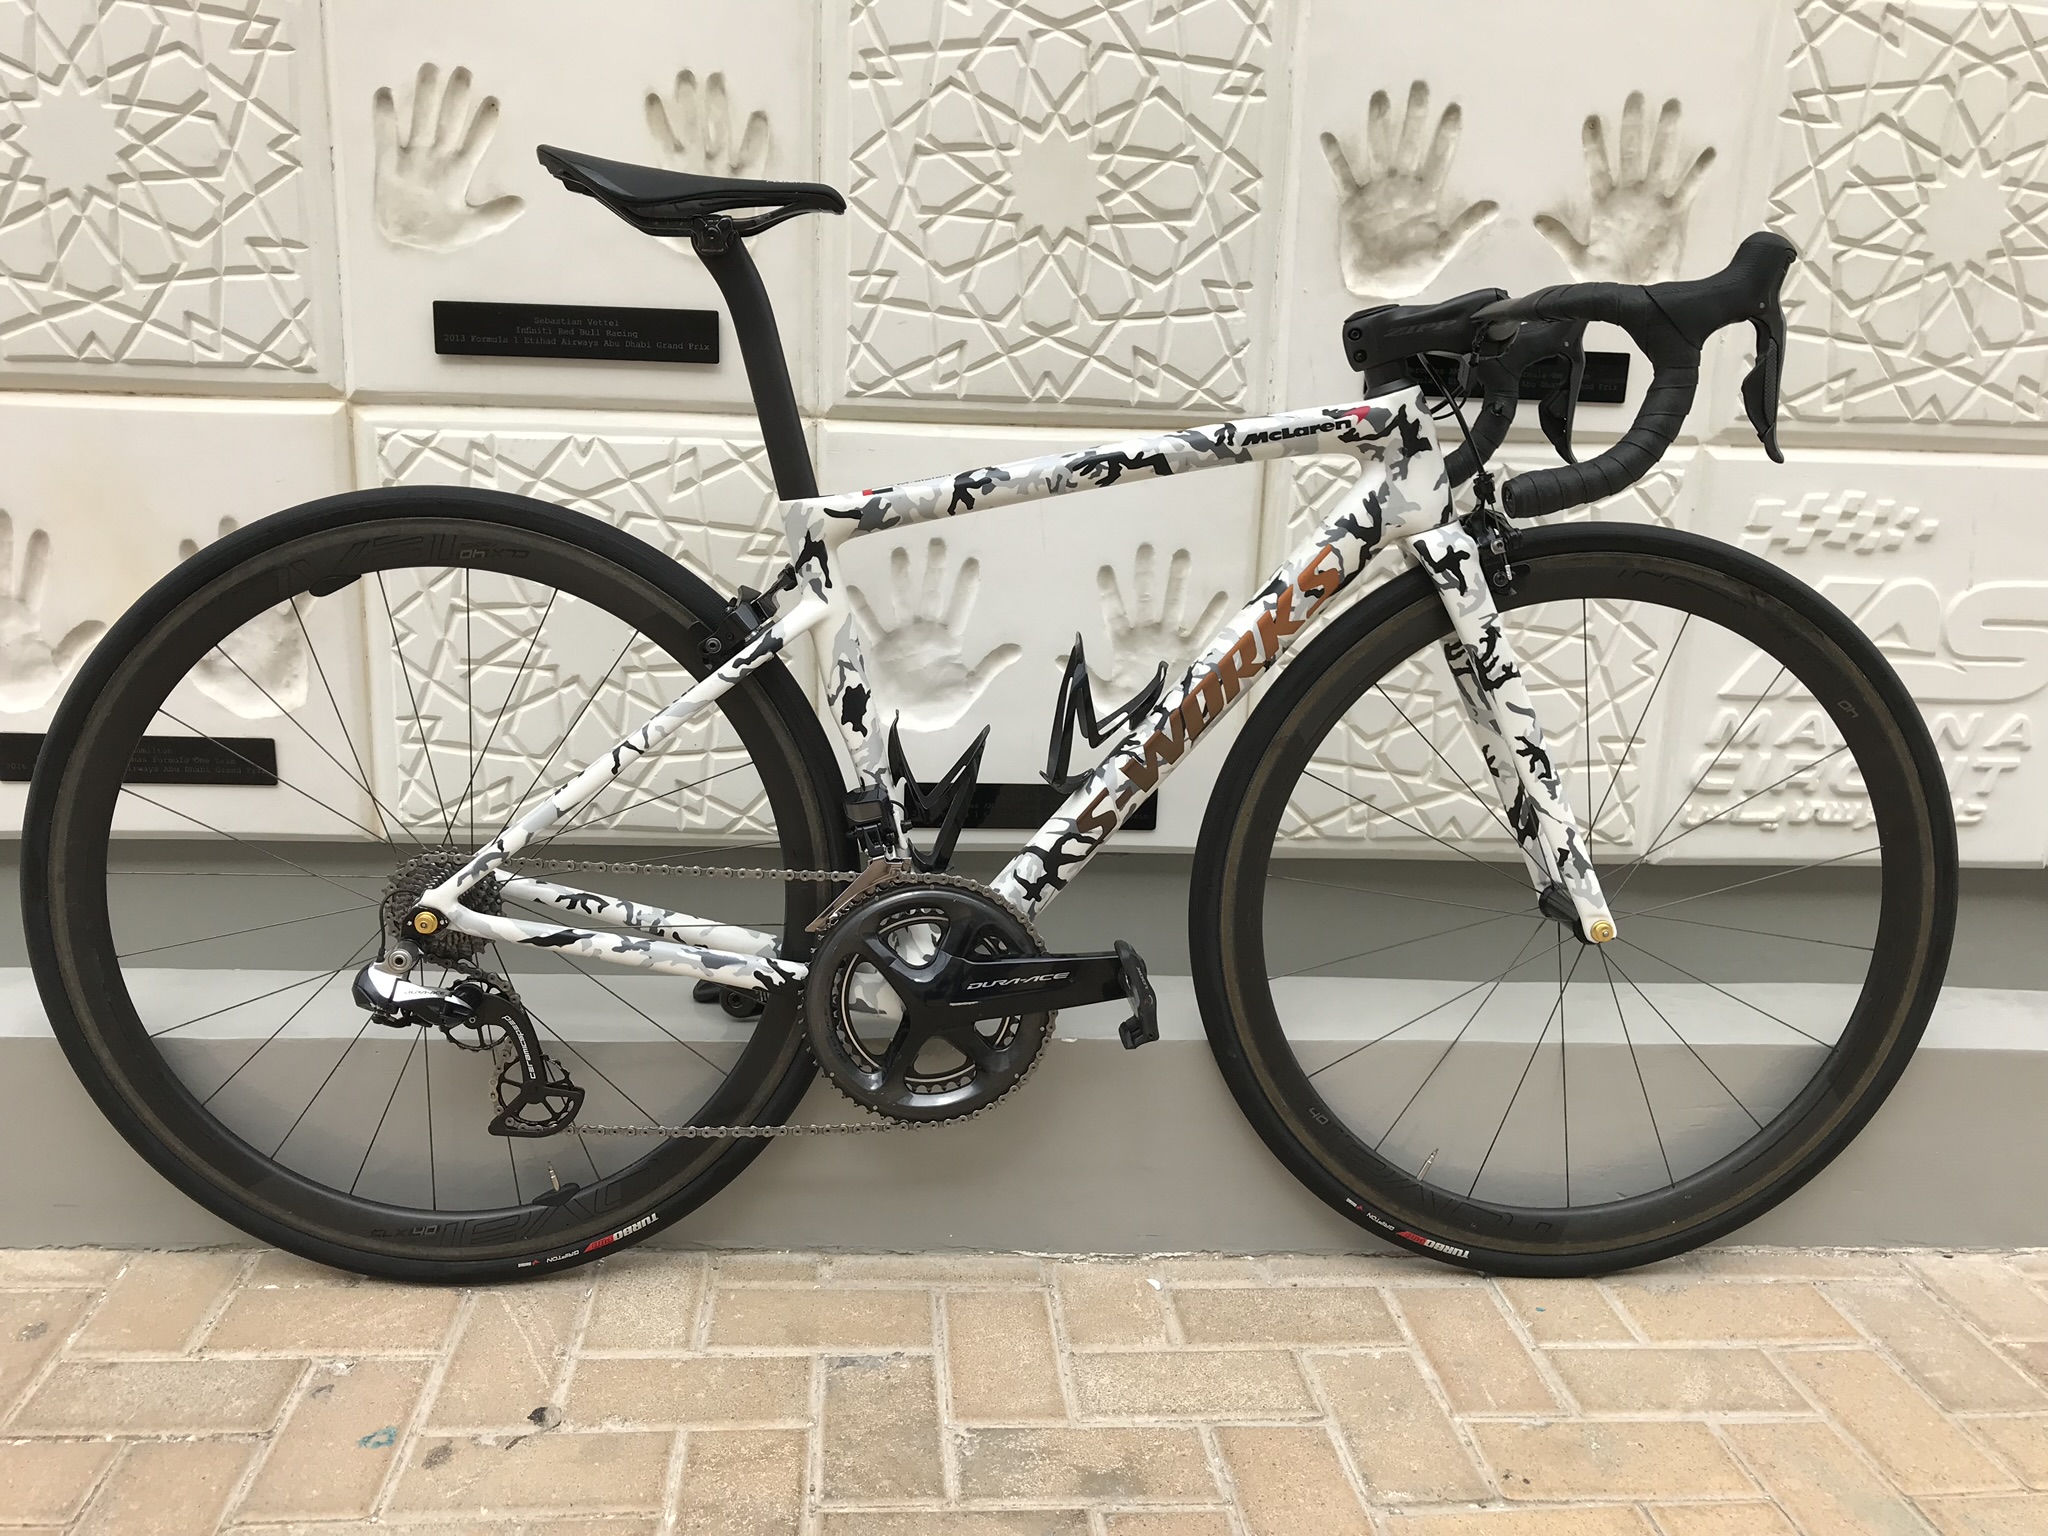 Bike service in Abu Dhabi - S-work custom paint